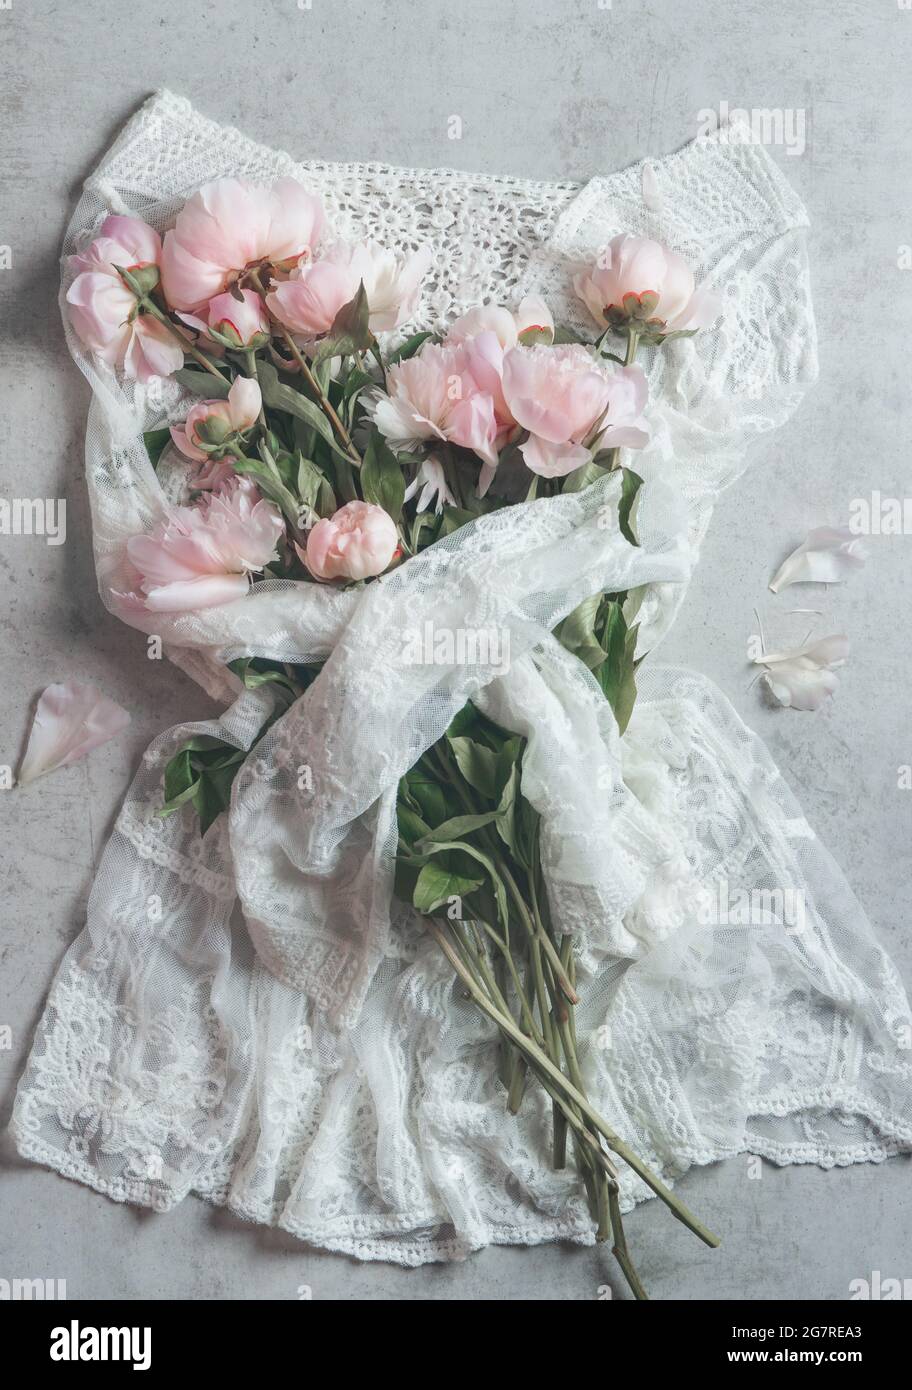 Belle dentelle blanche mini robe hugs bouquet de roses pâles pivoines fleurs. Vue de dessus Banque D'Images